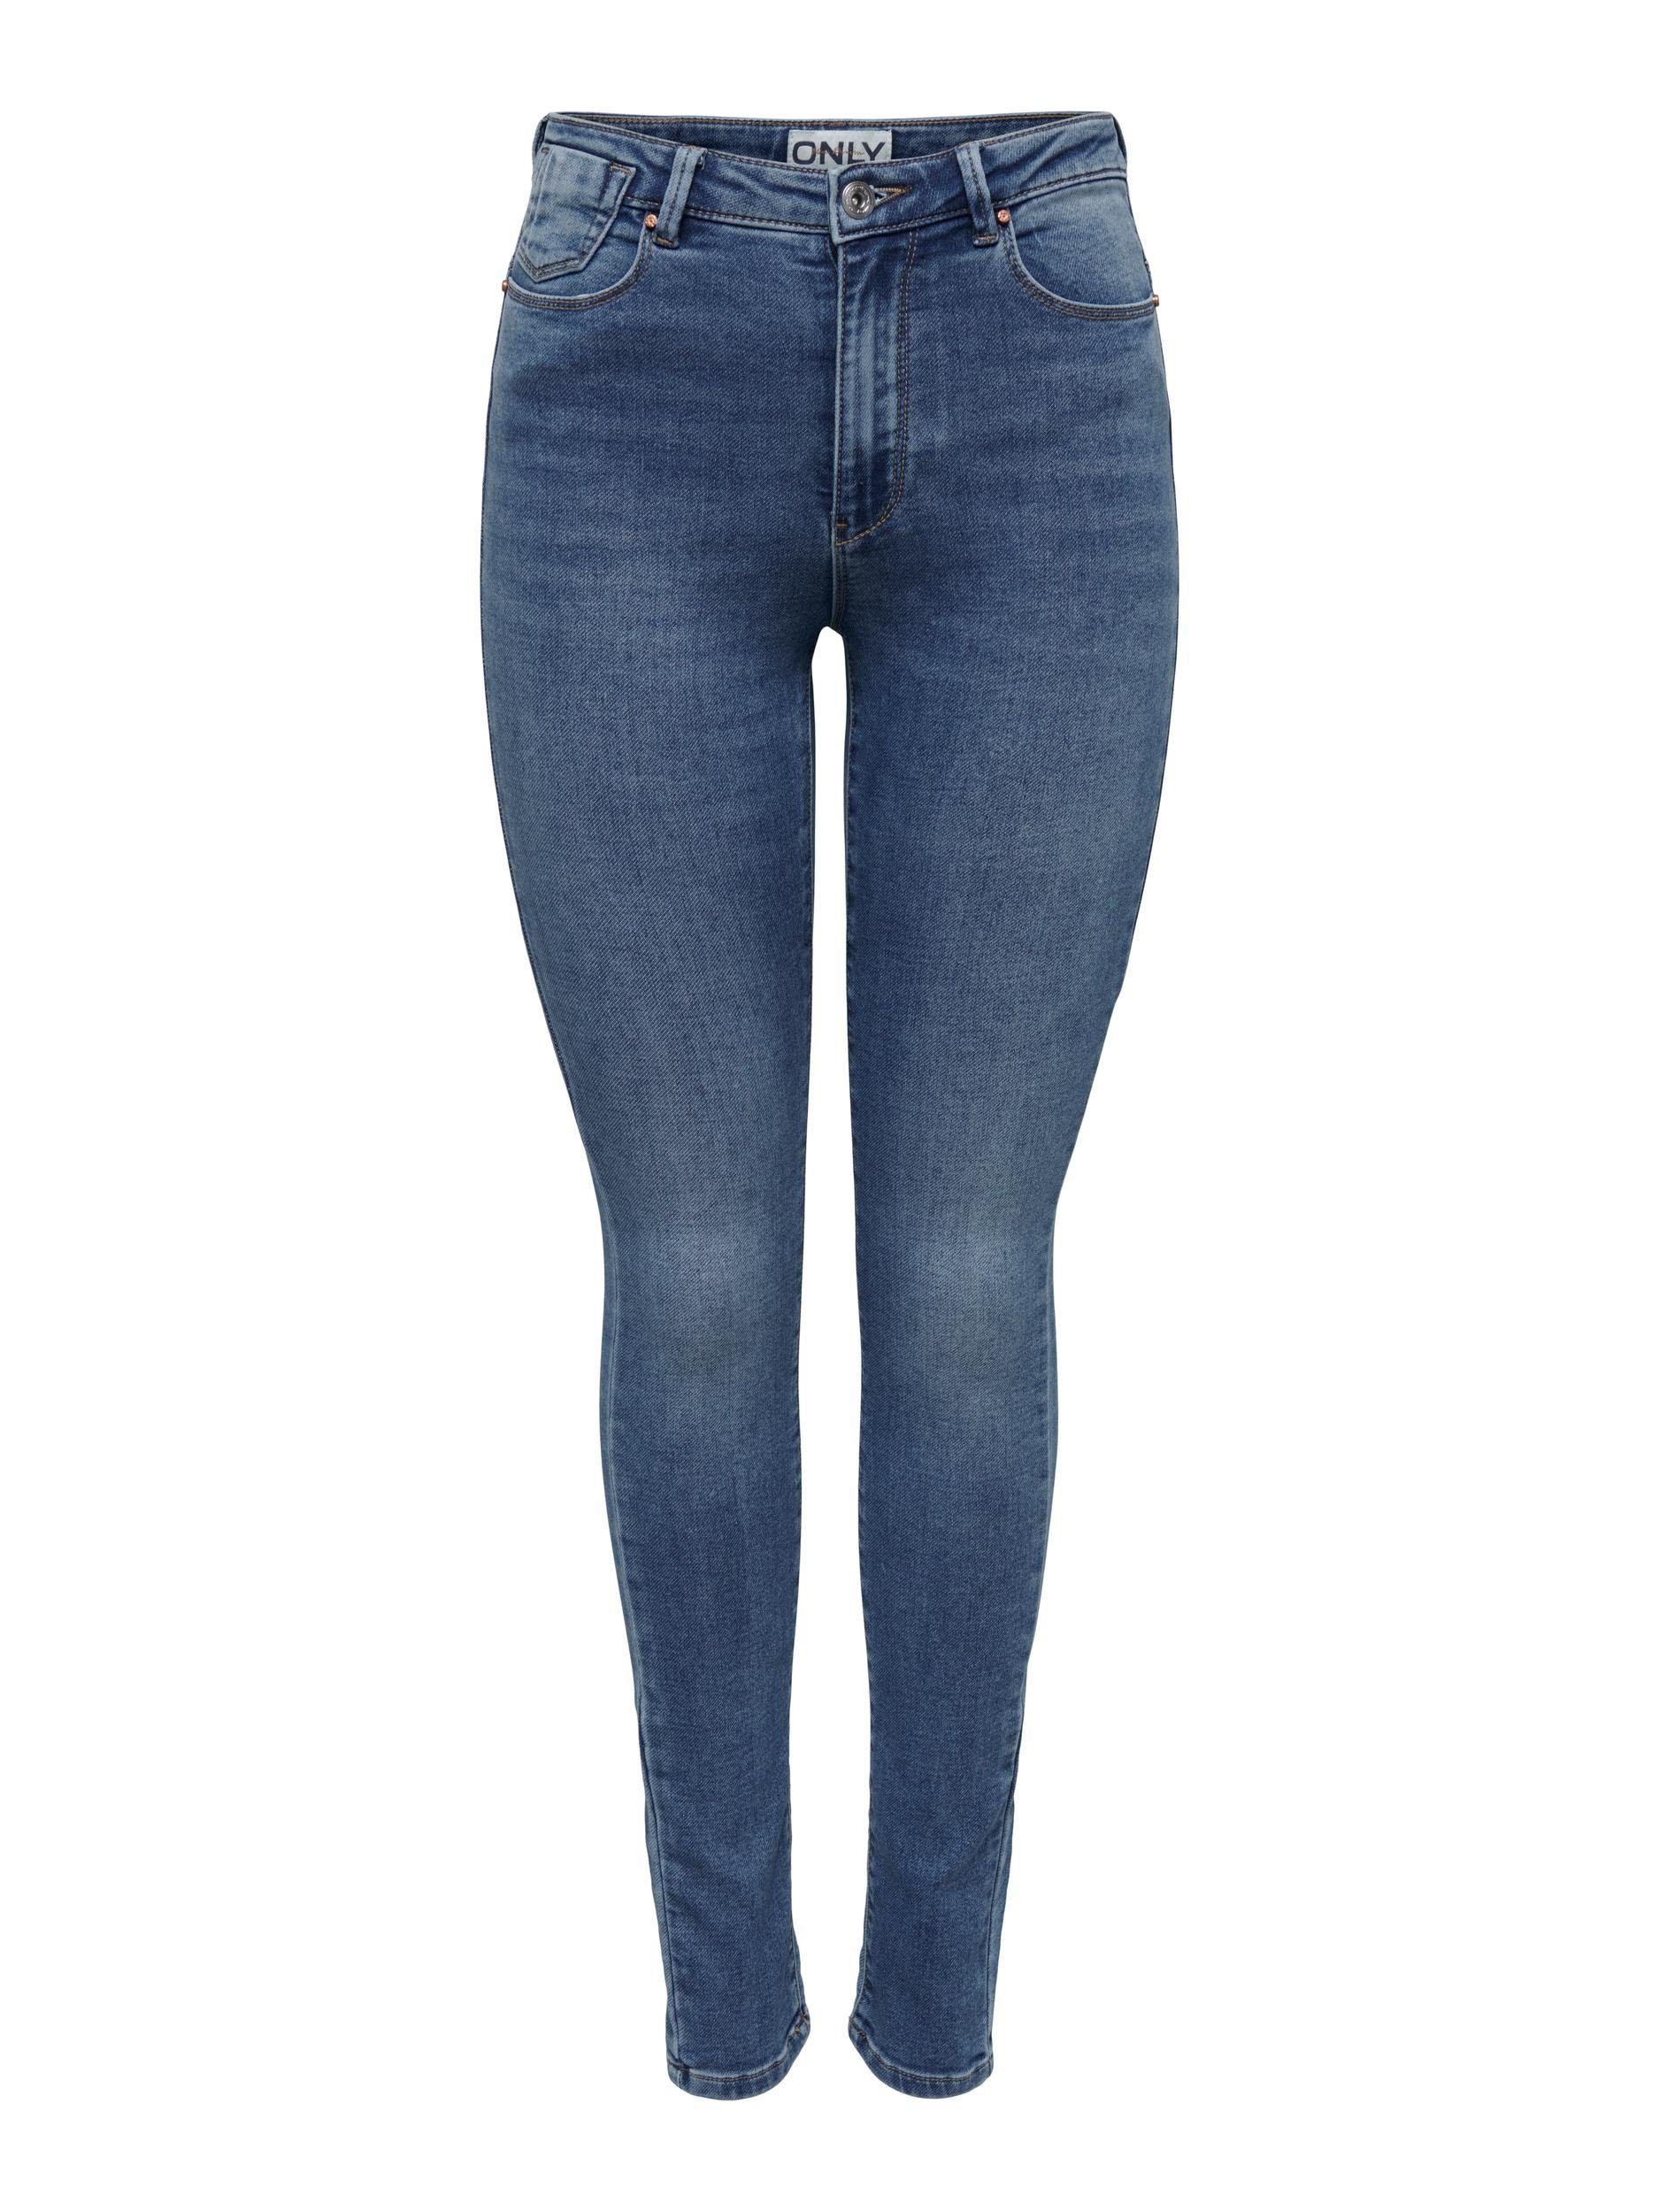 ONLY 5-Pocket-Jeans ONLFOREVER HIGH HW Denim JOGG Blue Medium DNM SKINNY